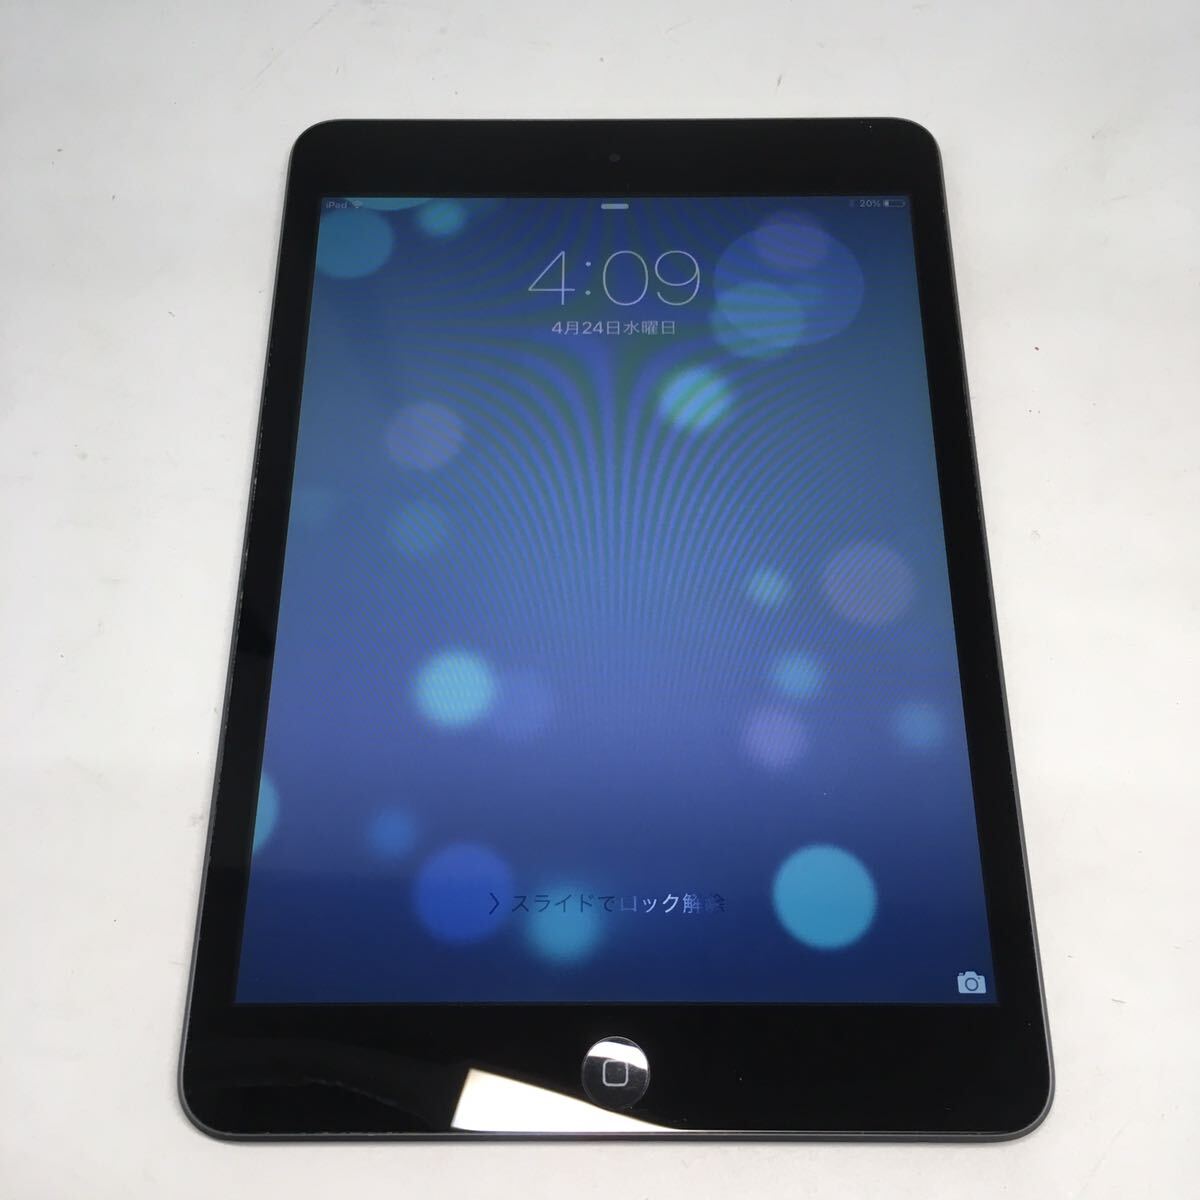 【美品】Apple アップル iPad mini 第一世代 A1432 Wi-Fiモデル MD528J/A スペースグレイ 【IK-01328②】の画像1